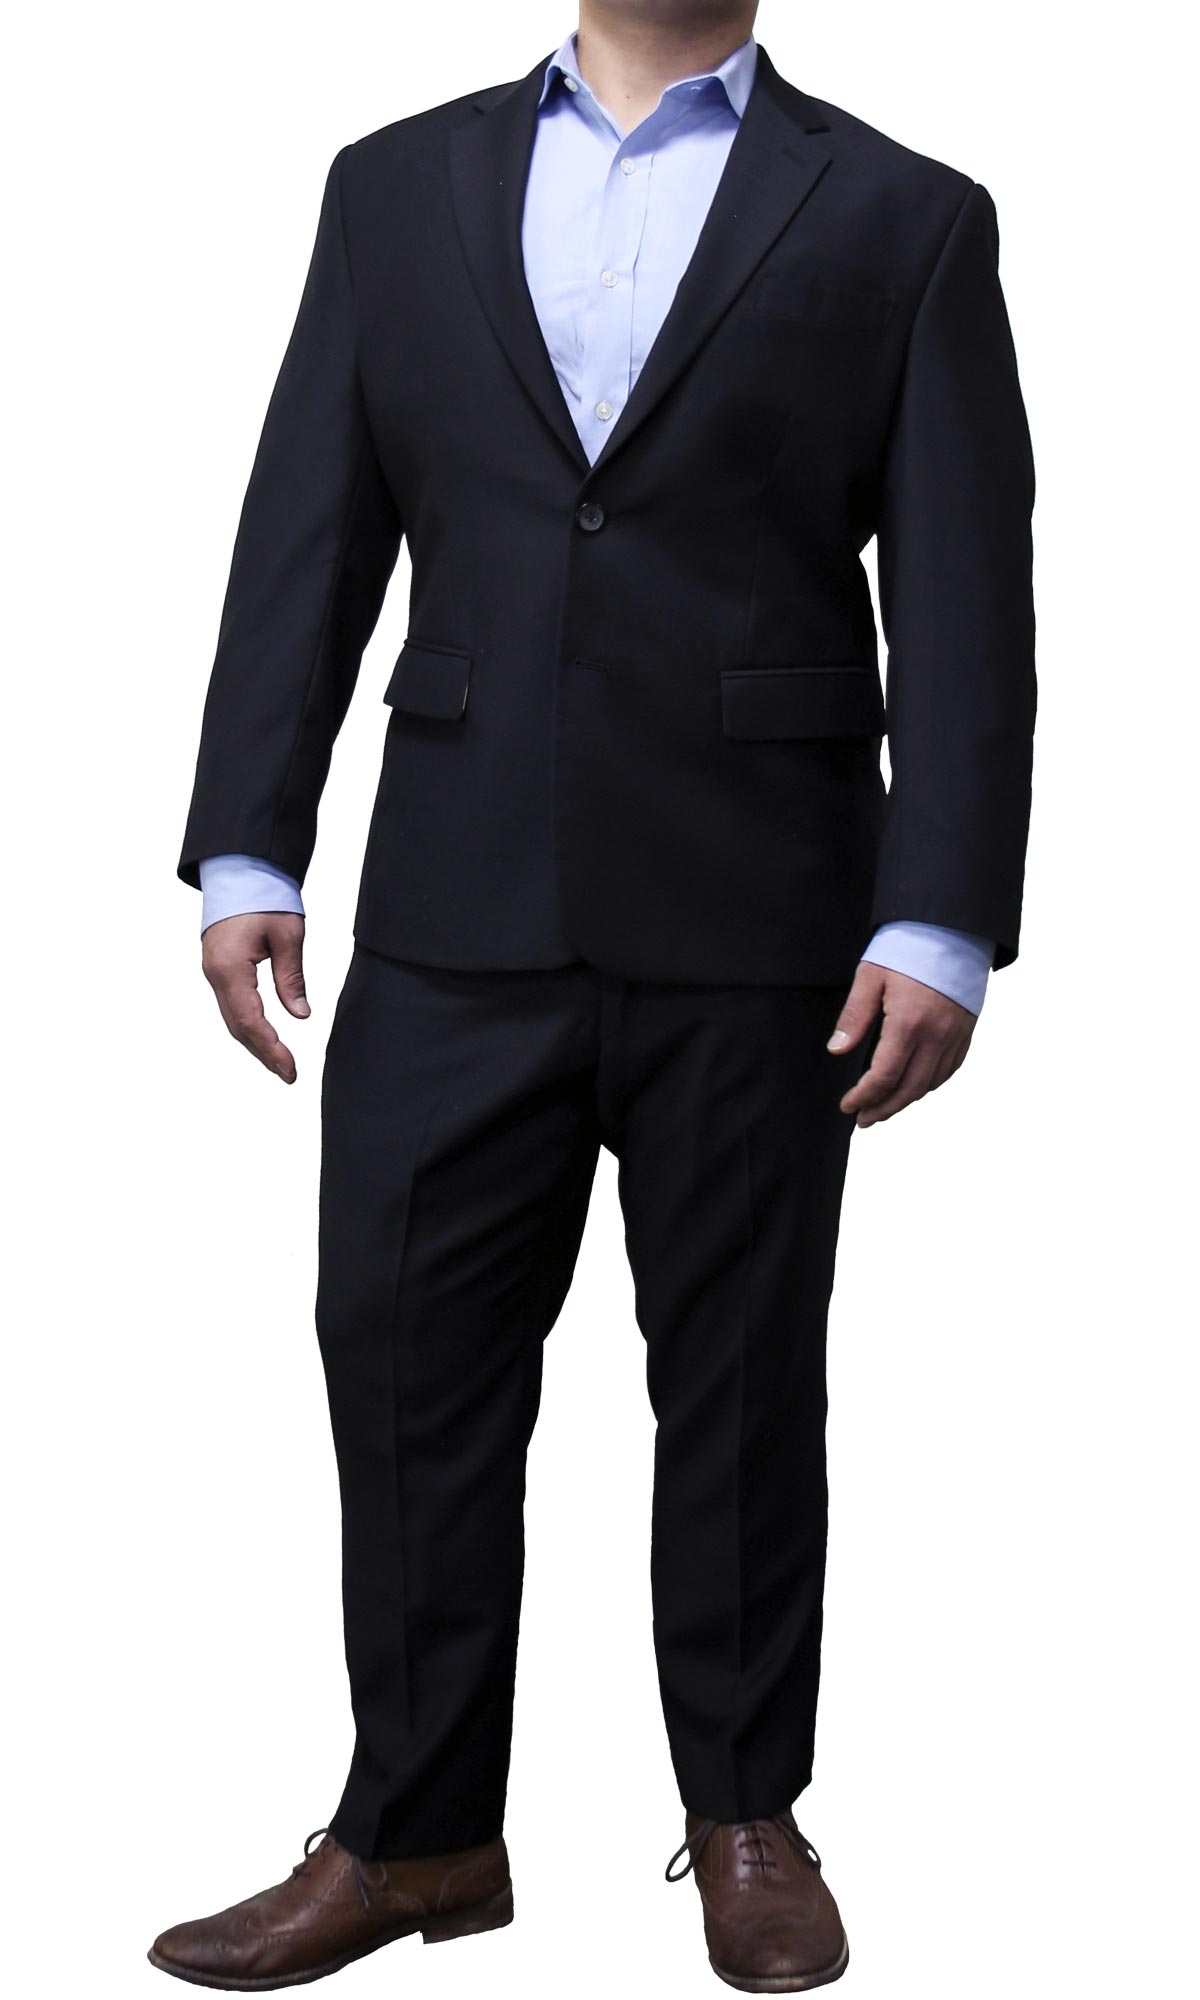 https://fraternitysuits.com/wp-content/uploads/2018/07/black-mens-custom-suit-ks015.jpg